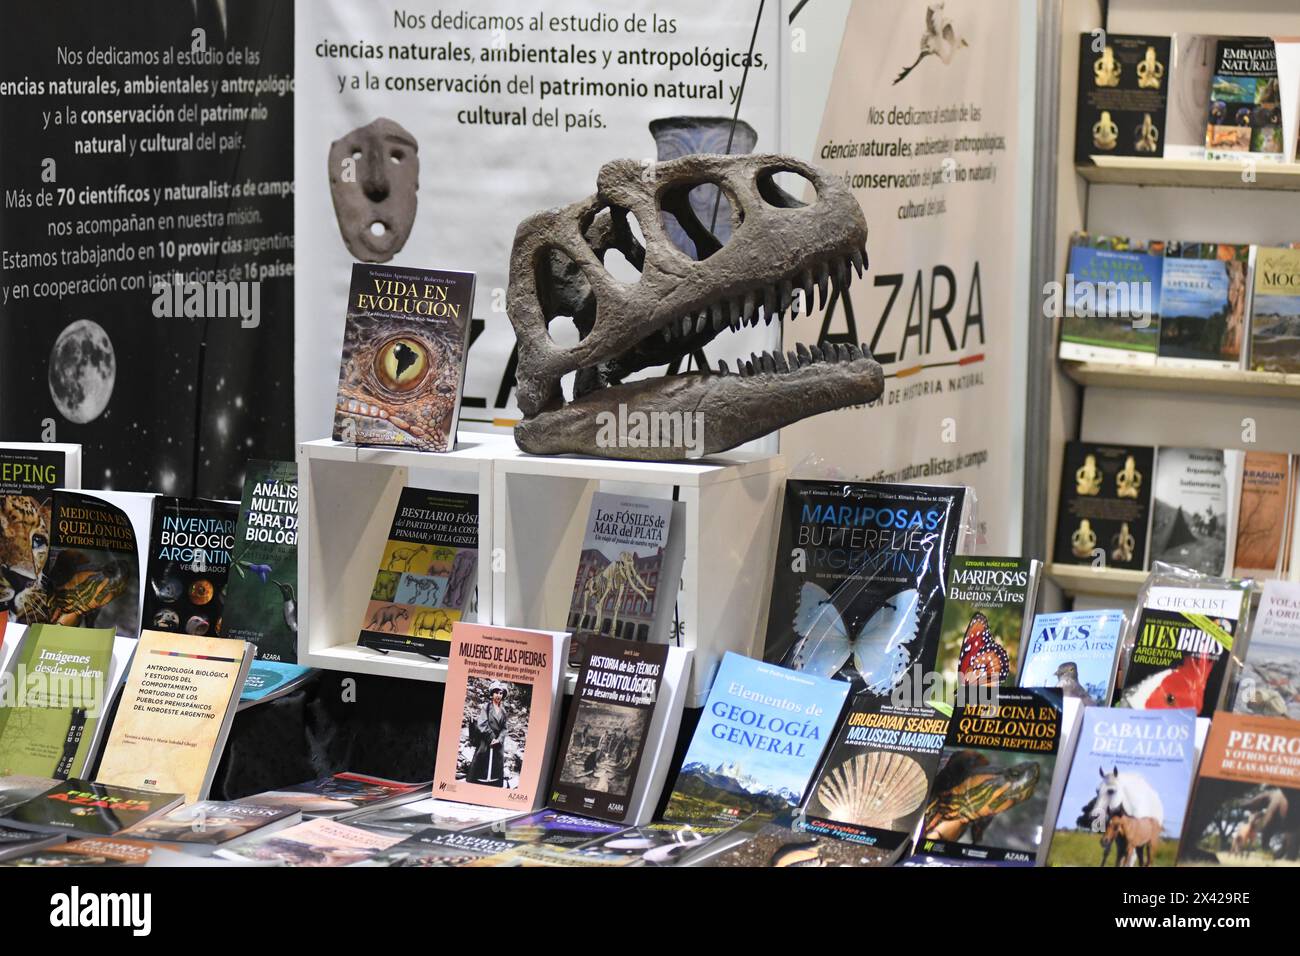 Archäologiebücher stehen mit einem Dinosaurierschädel. 48° Feria Internacional del Libro de Buenos Aires (48° Internationale Buchmesse von Buenos Aires). La Rural, Predio Ferial de Palermo. Argentinien Stockfoto